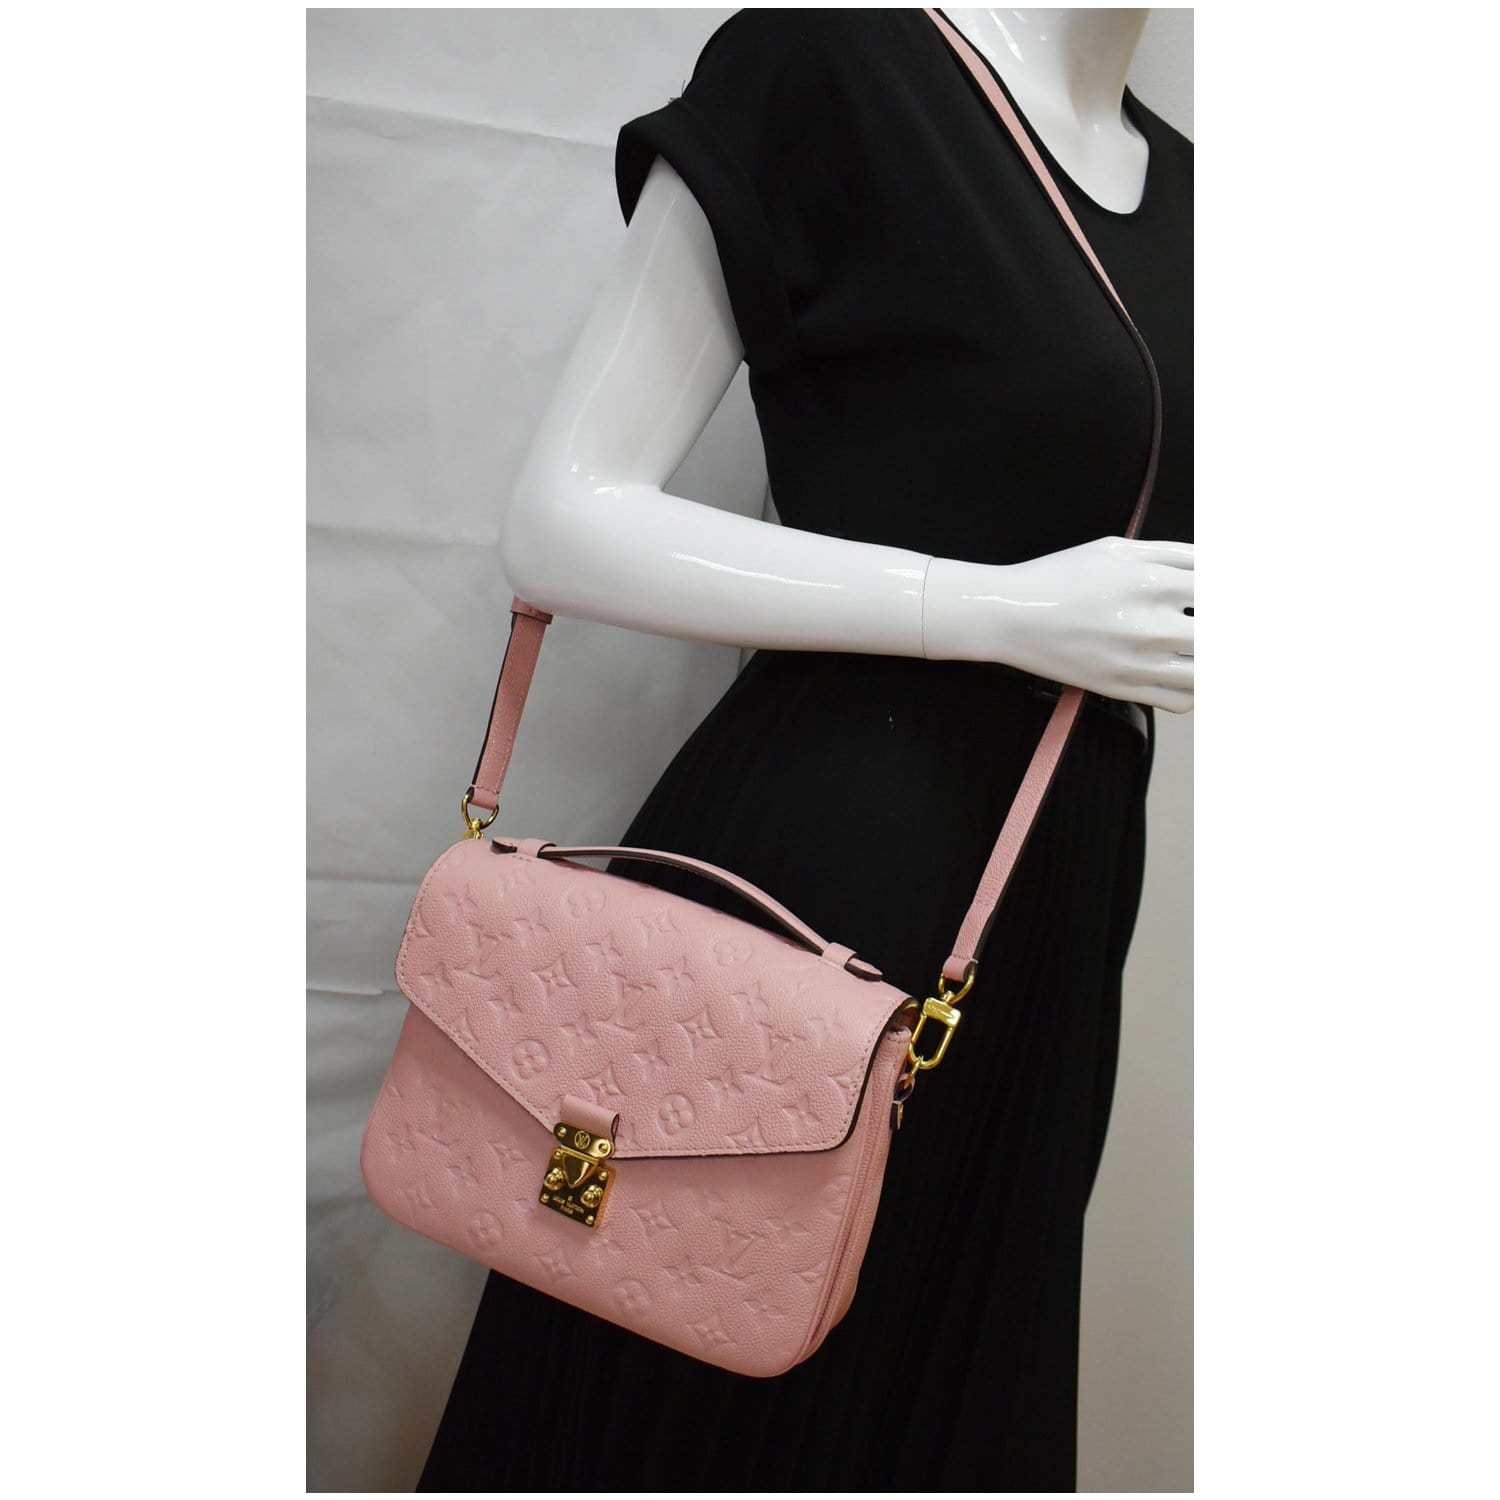 MINT! Louis Vuitton Pochette Metis Rose Poudre Pink Empreinte